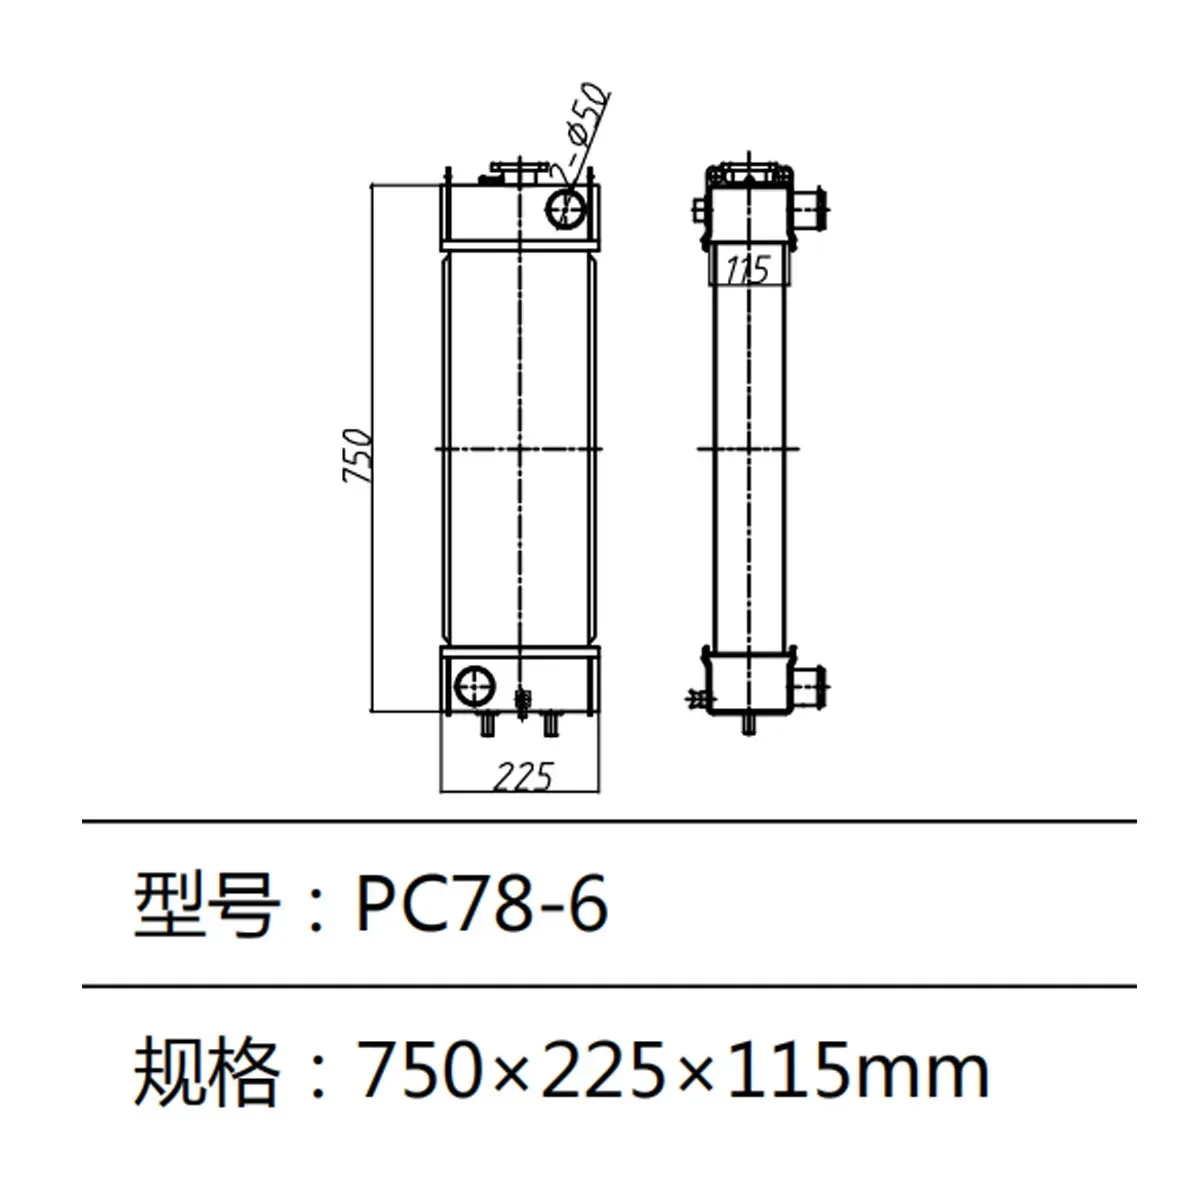 Water Tank PC78-6 Radiator For Komatsu Excavator